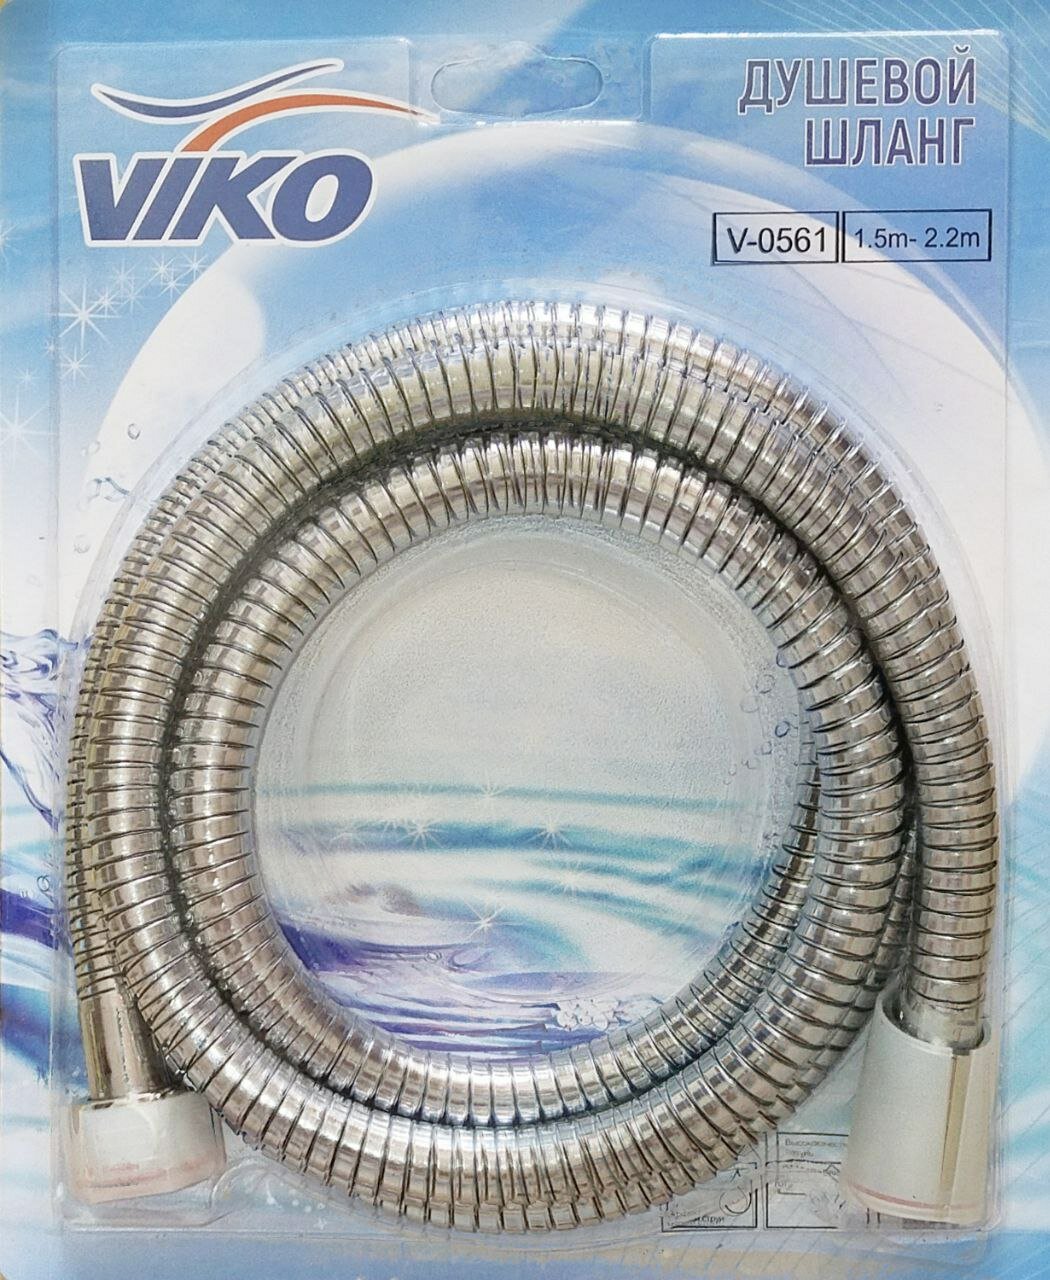 Шланг для душа VIKO 1,6-2,2м V-0561